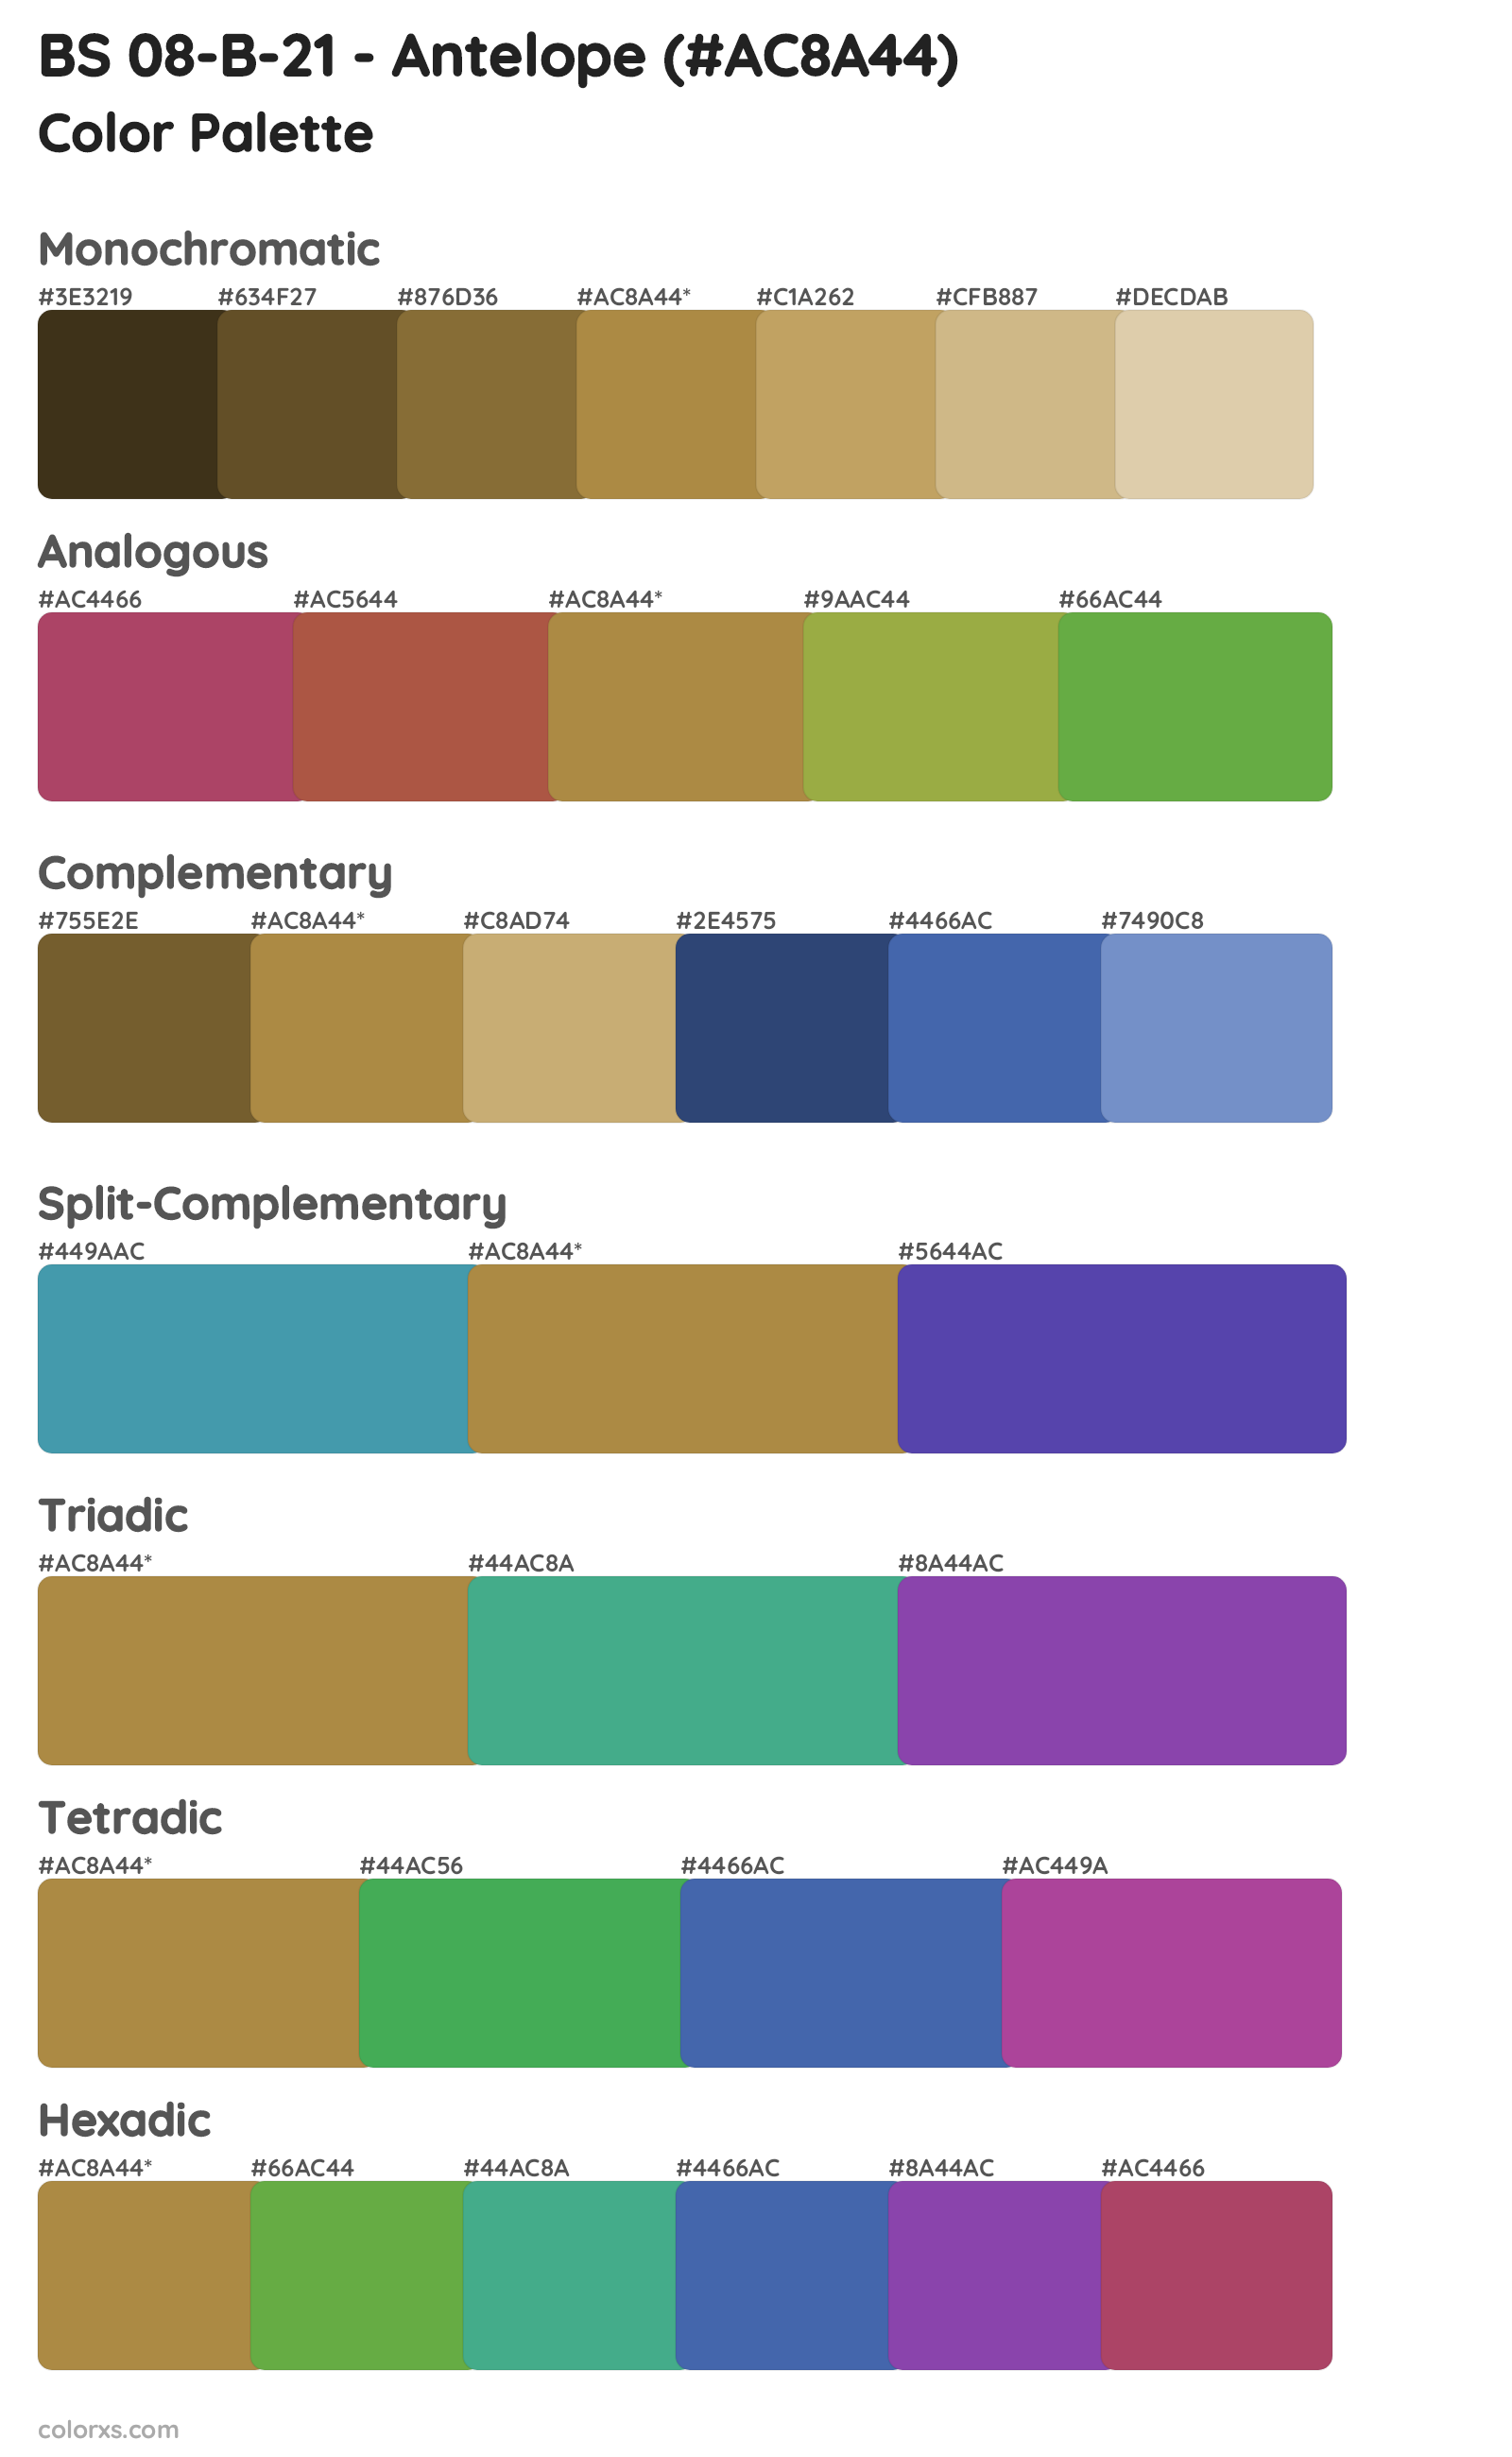 BS 08-B-21 - Antelope Color Scheme Palettes